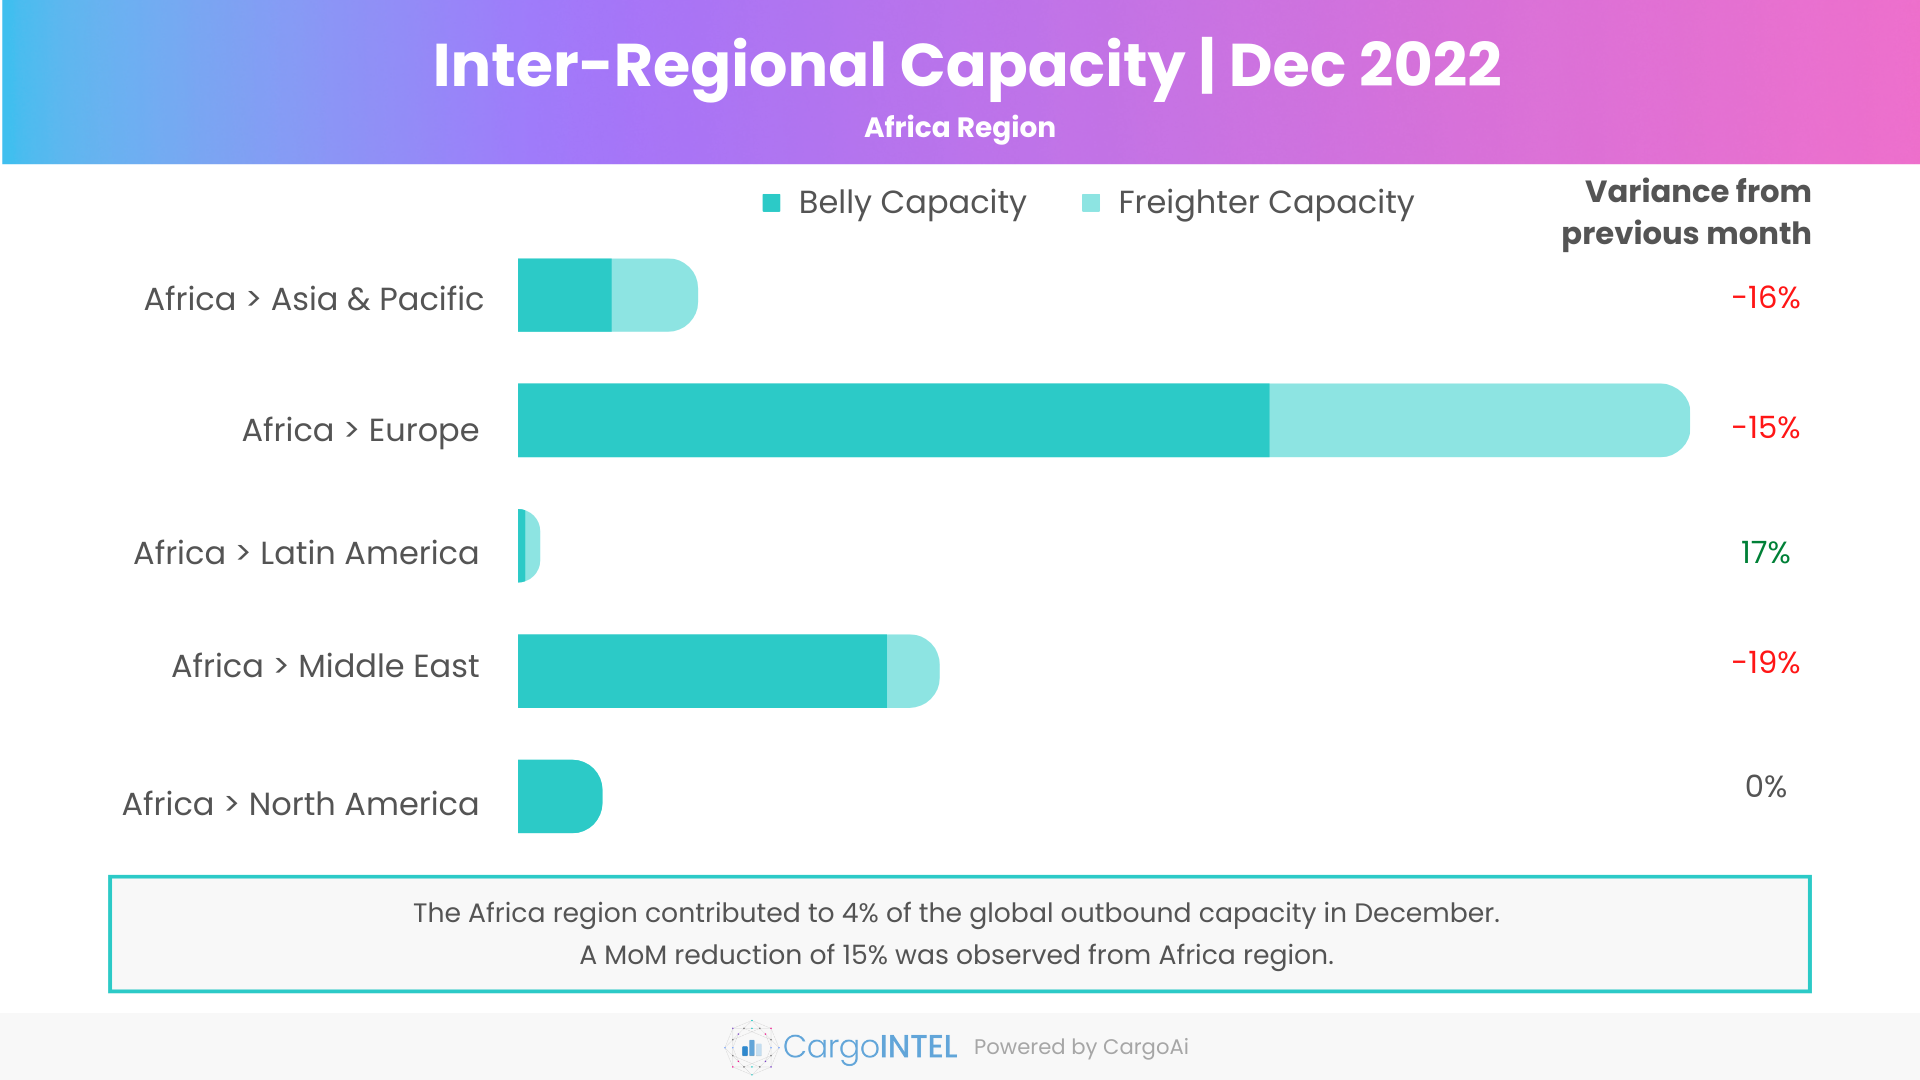 Air cargo capacity of Africa region of Dec 2022